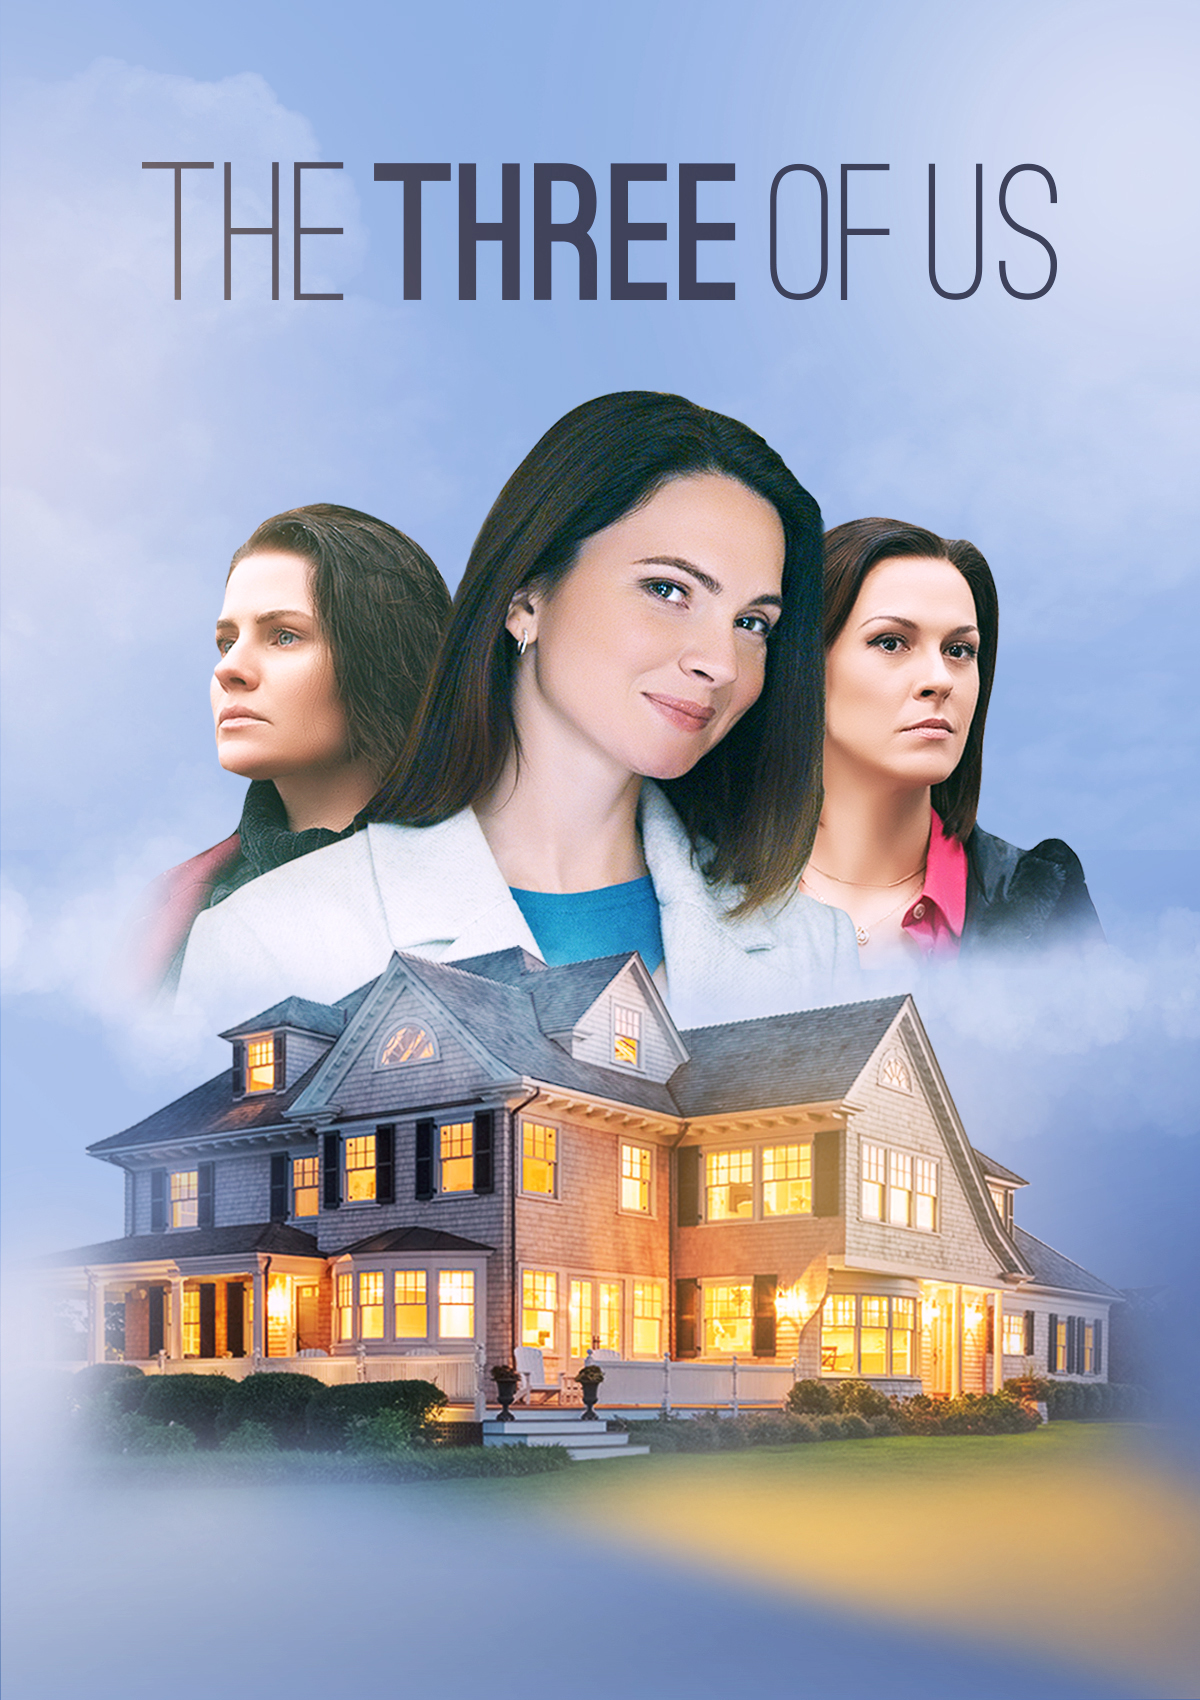 Три сестры (2020) постер